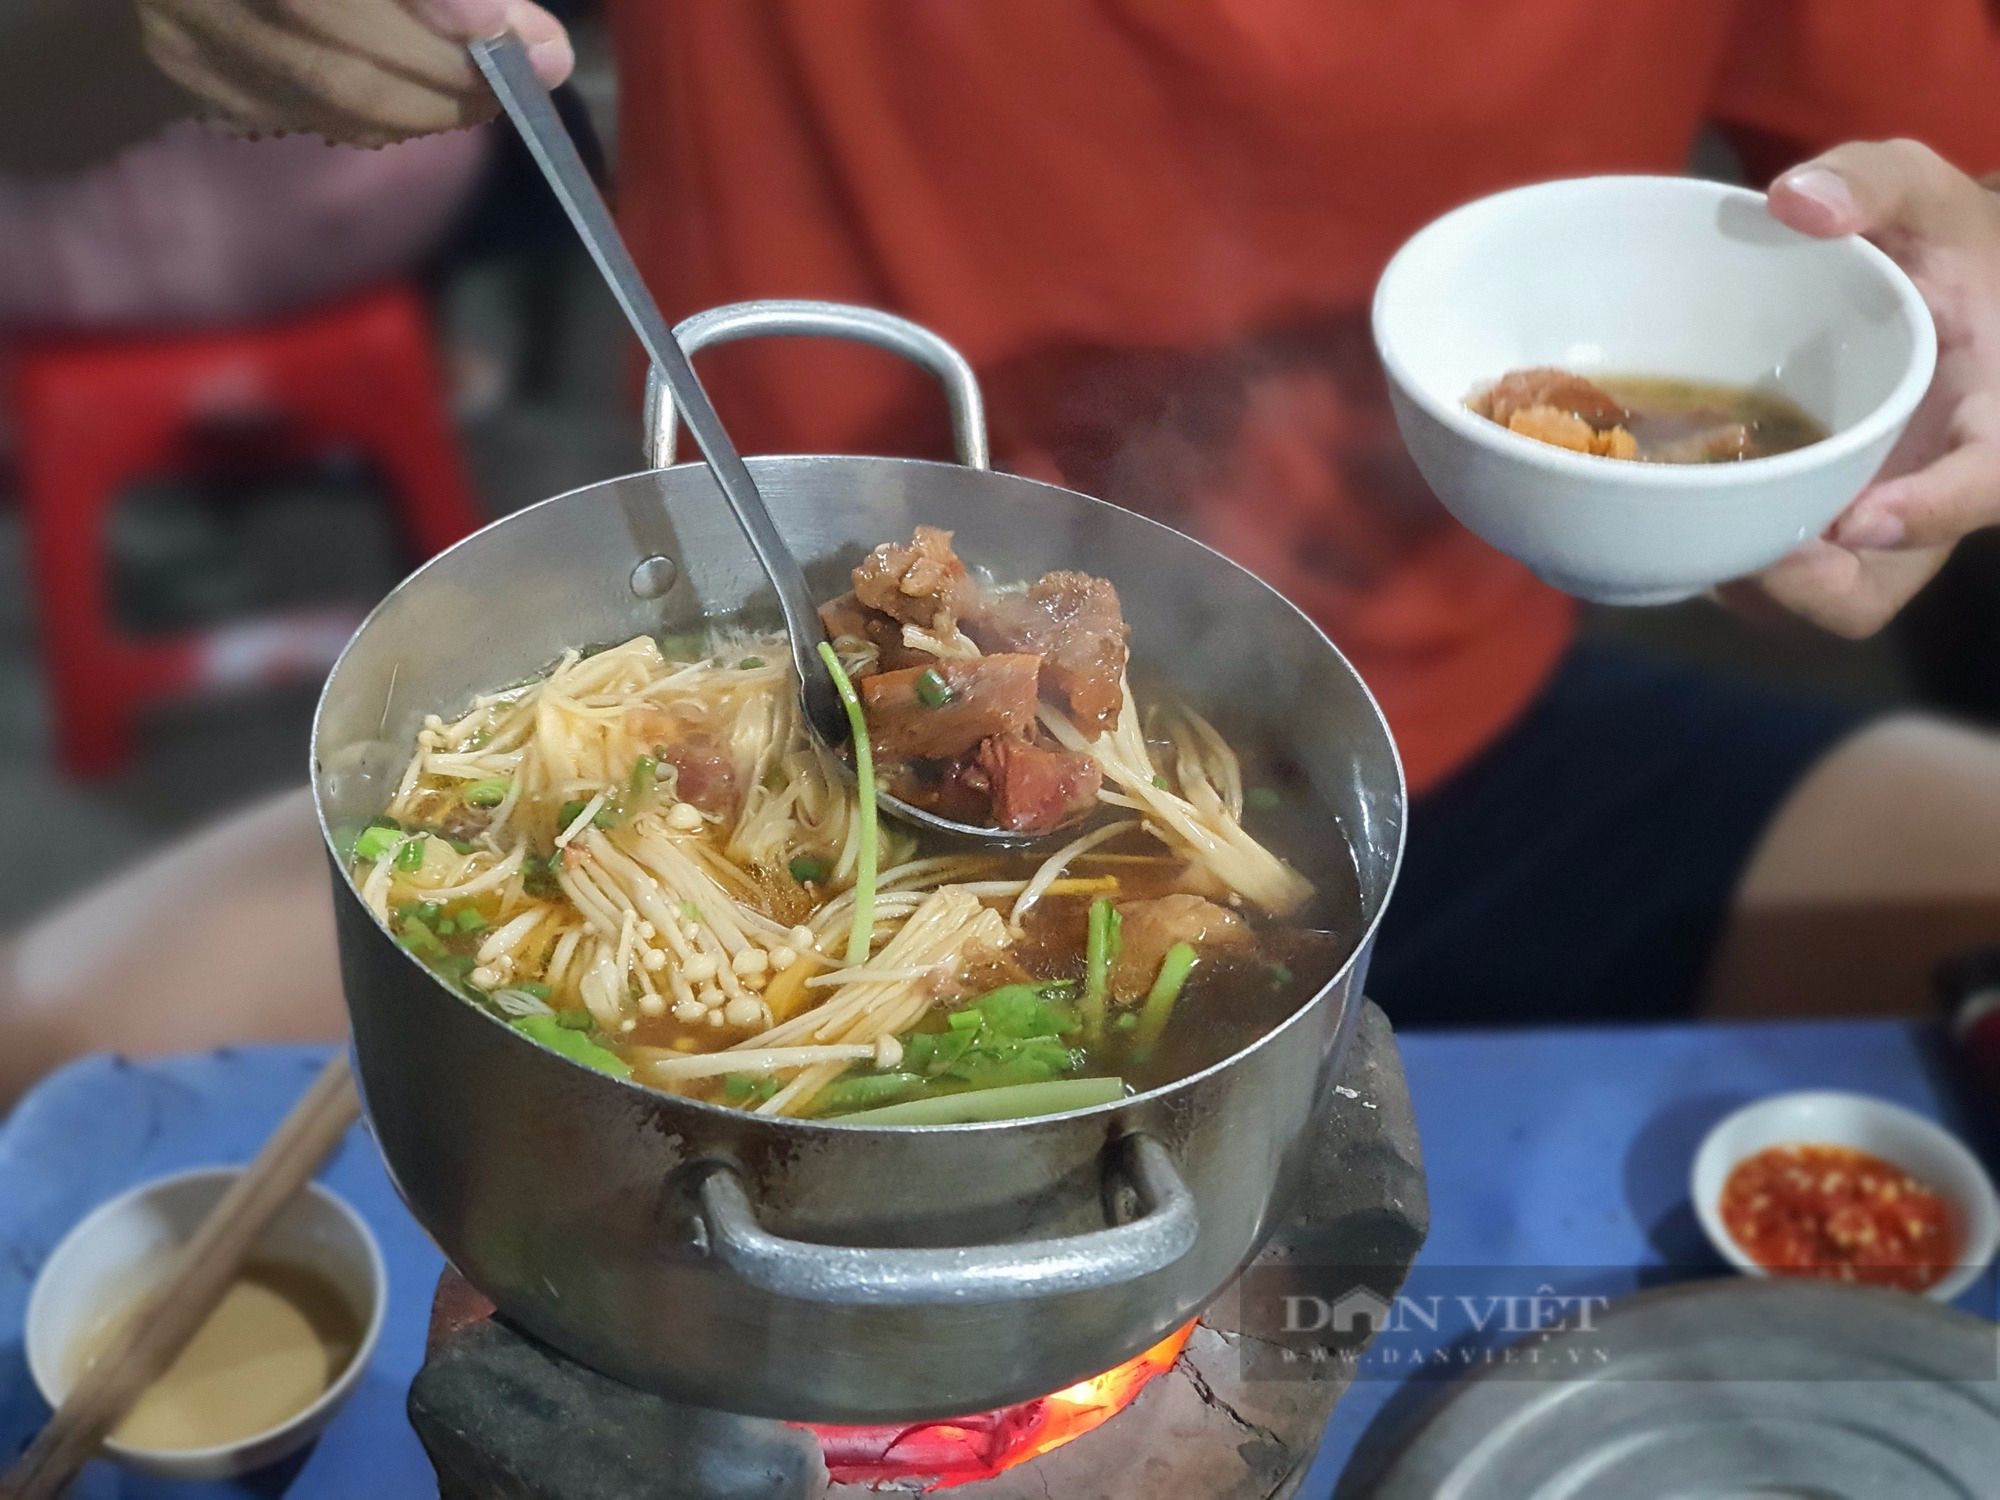 Sài Gòn quán: Lẩu bò kho Campuchia trên bếp than hồng, hương vị độc lạ khu Vườn Chuối - Ảnh 1.